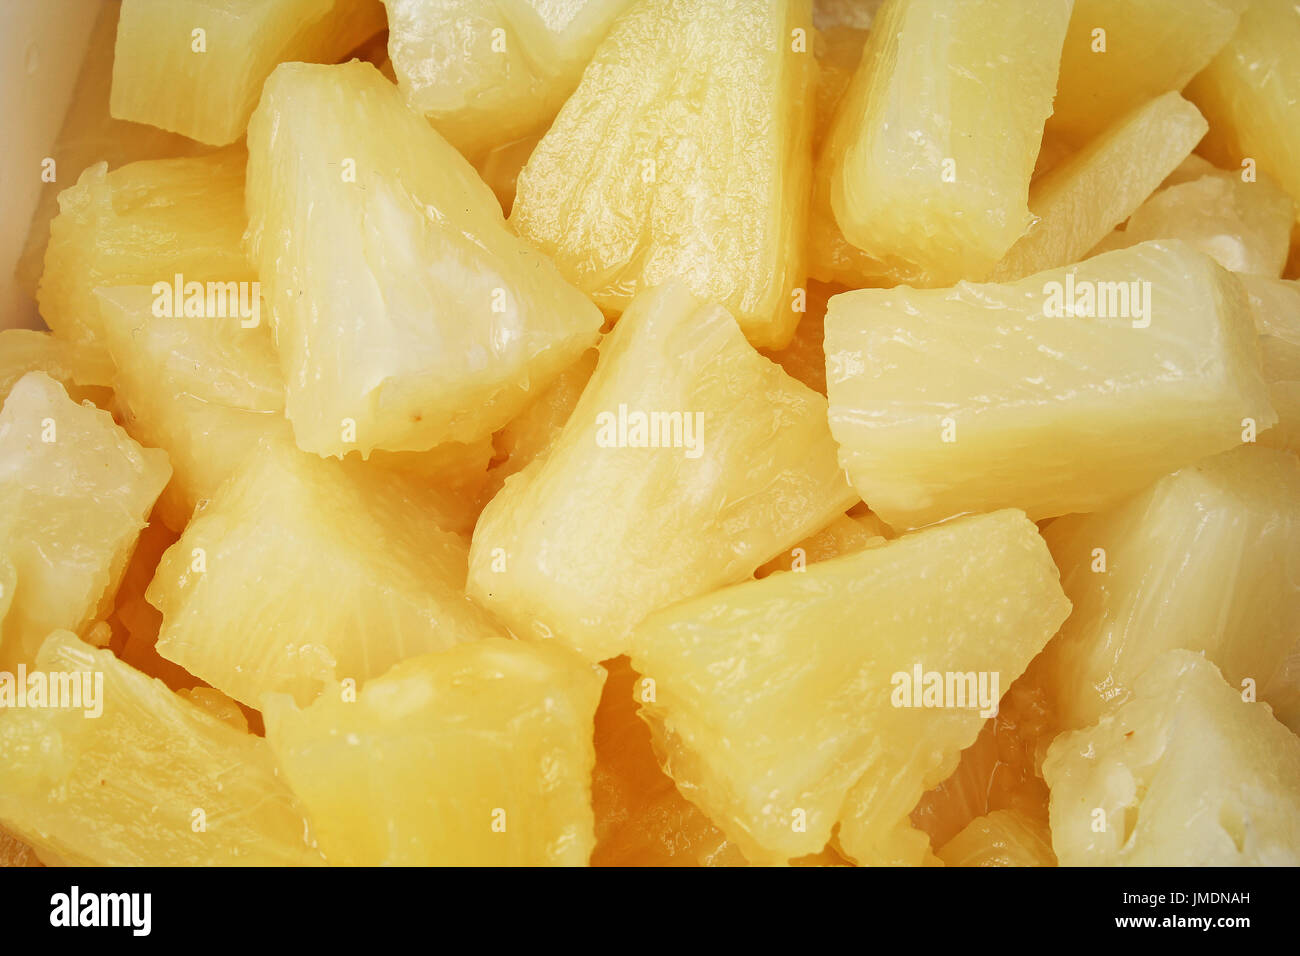 Pineapple slices Stock Photo